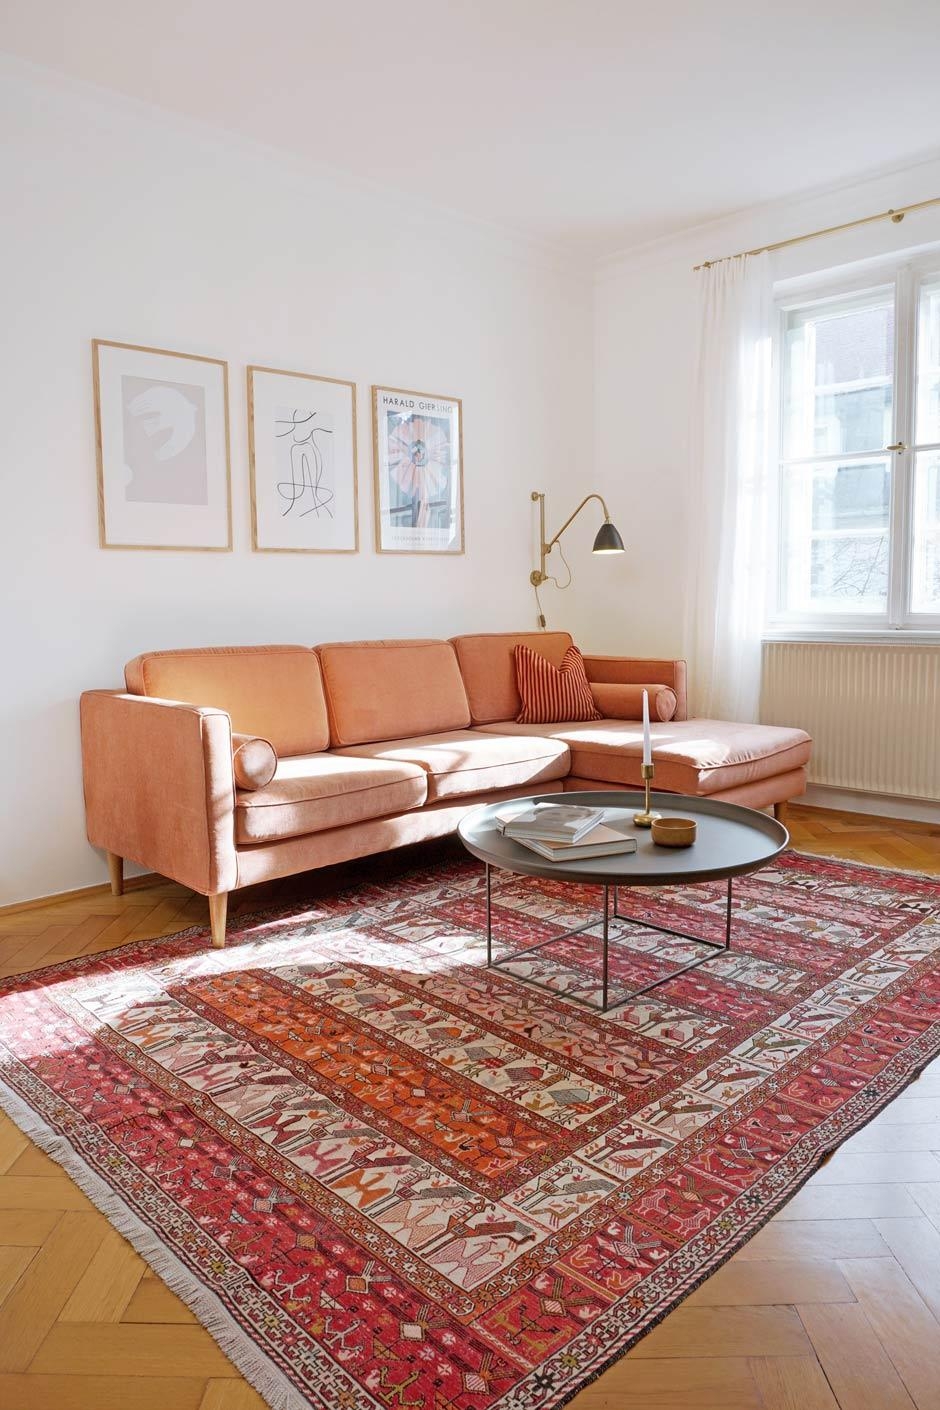 Wohnzimmer mit Sofa von Sofacompany, Beistelltisch von Norr11 und Gubi Wandleuchte.